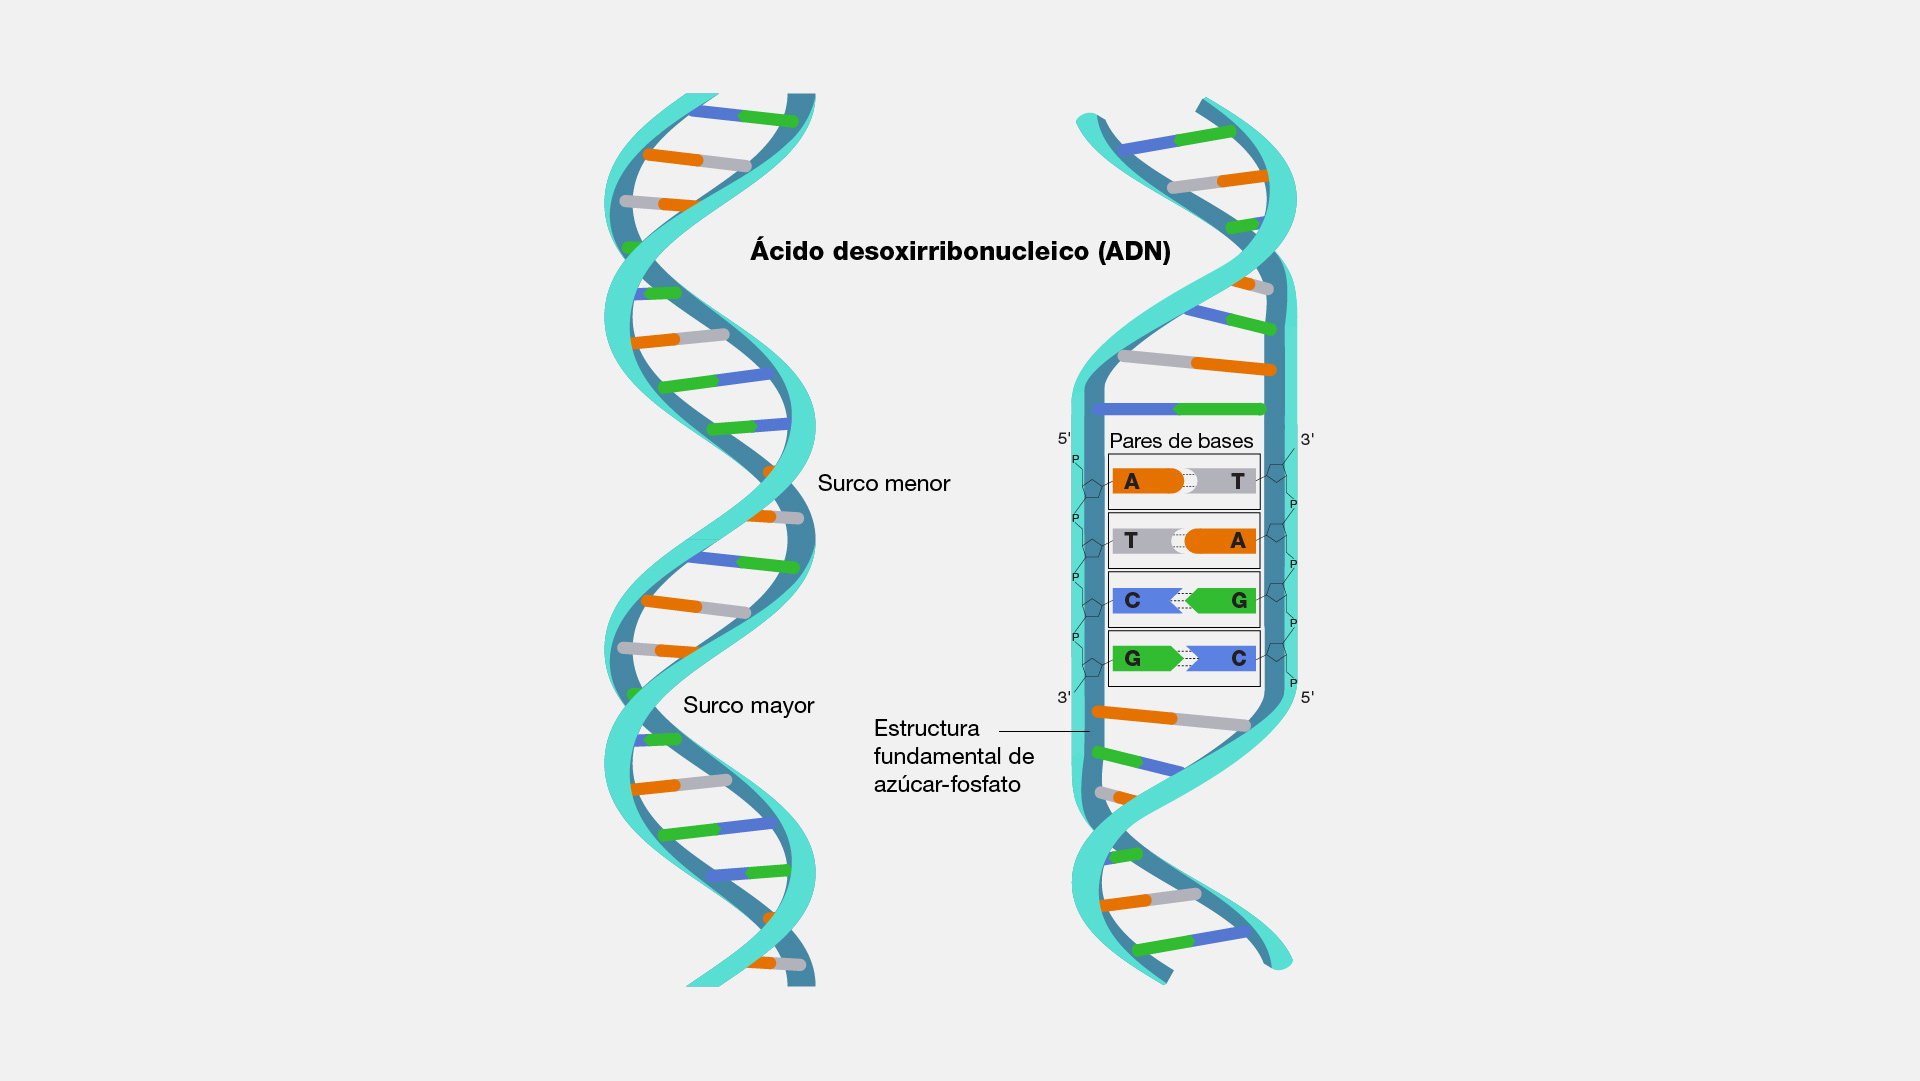 Arriba 39+ imagen modelo de la estructura de doble helice del adn